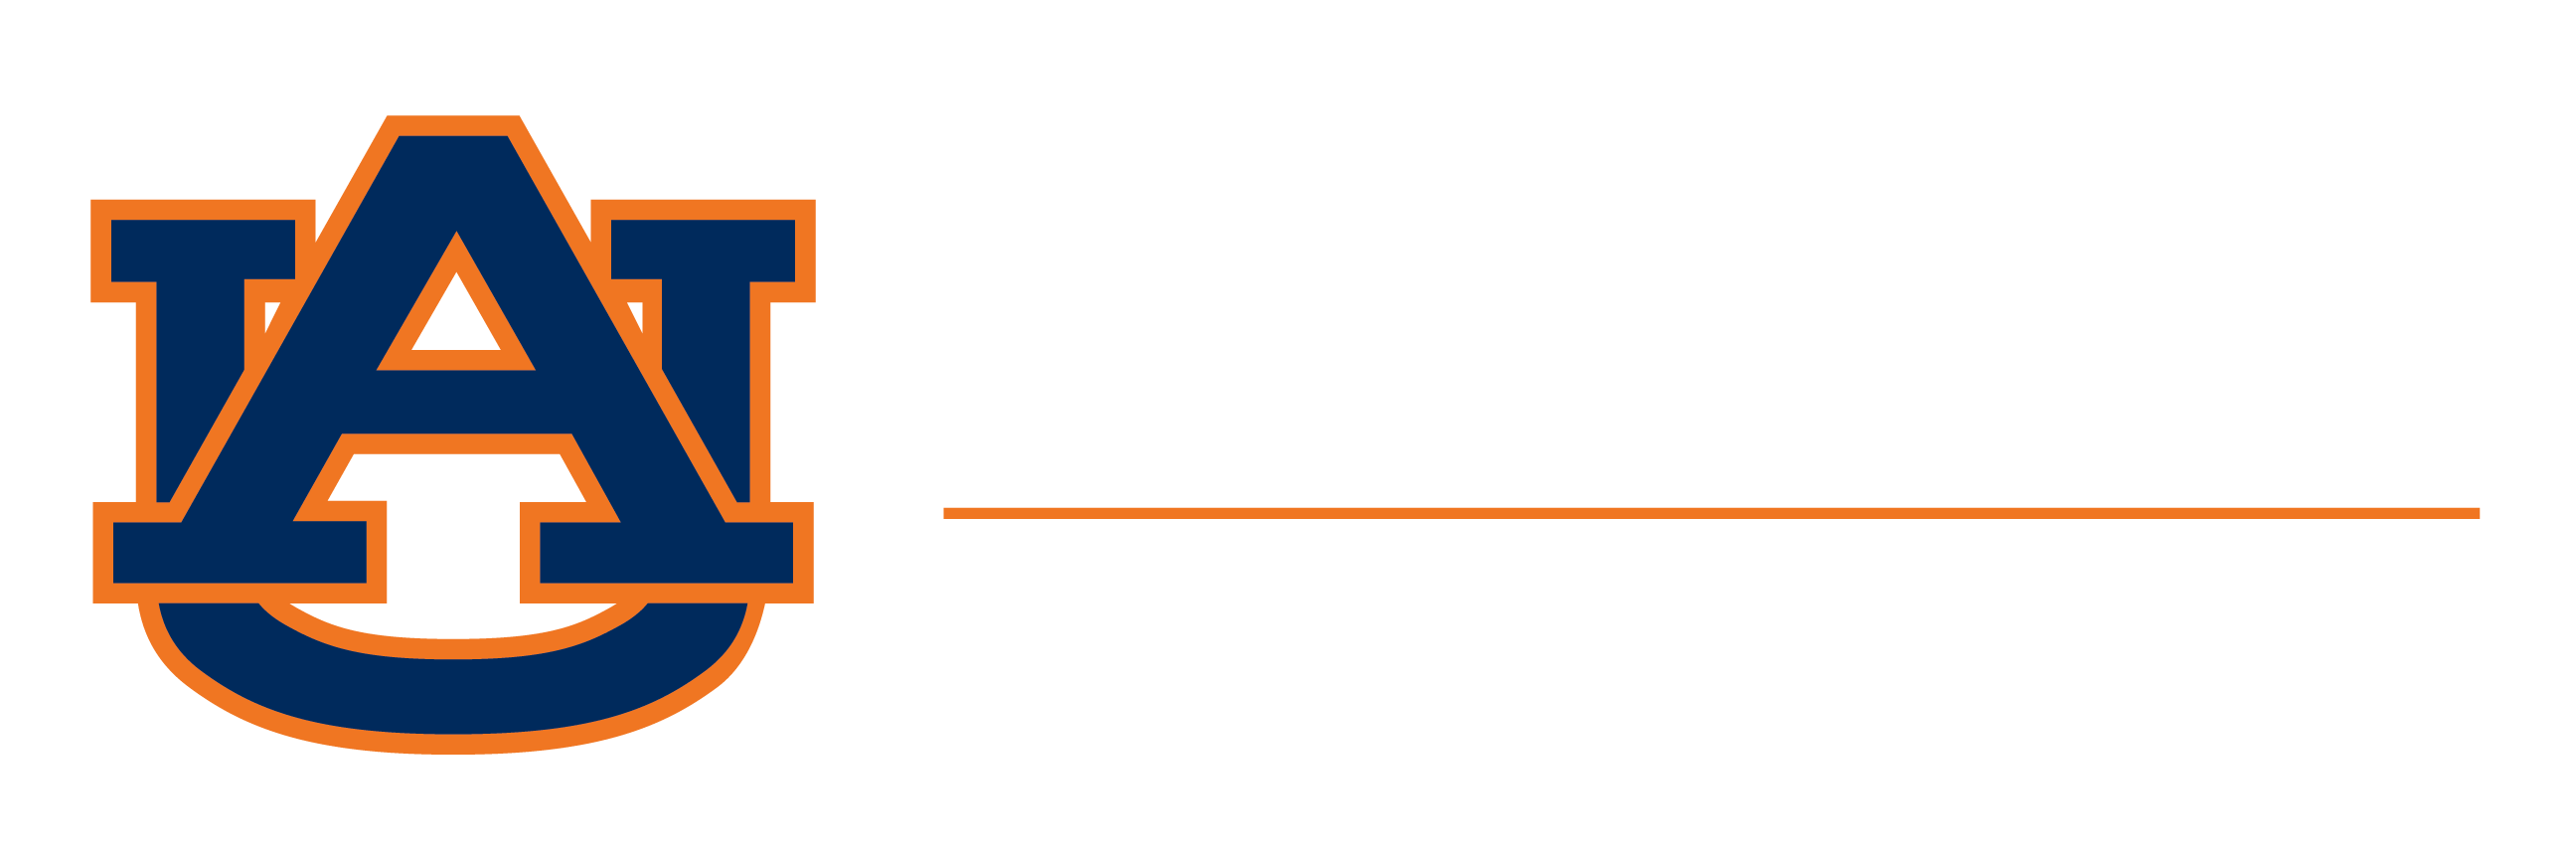 Auburn University wordmark logo